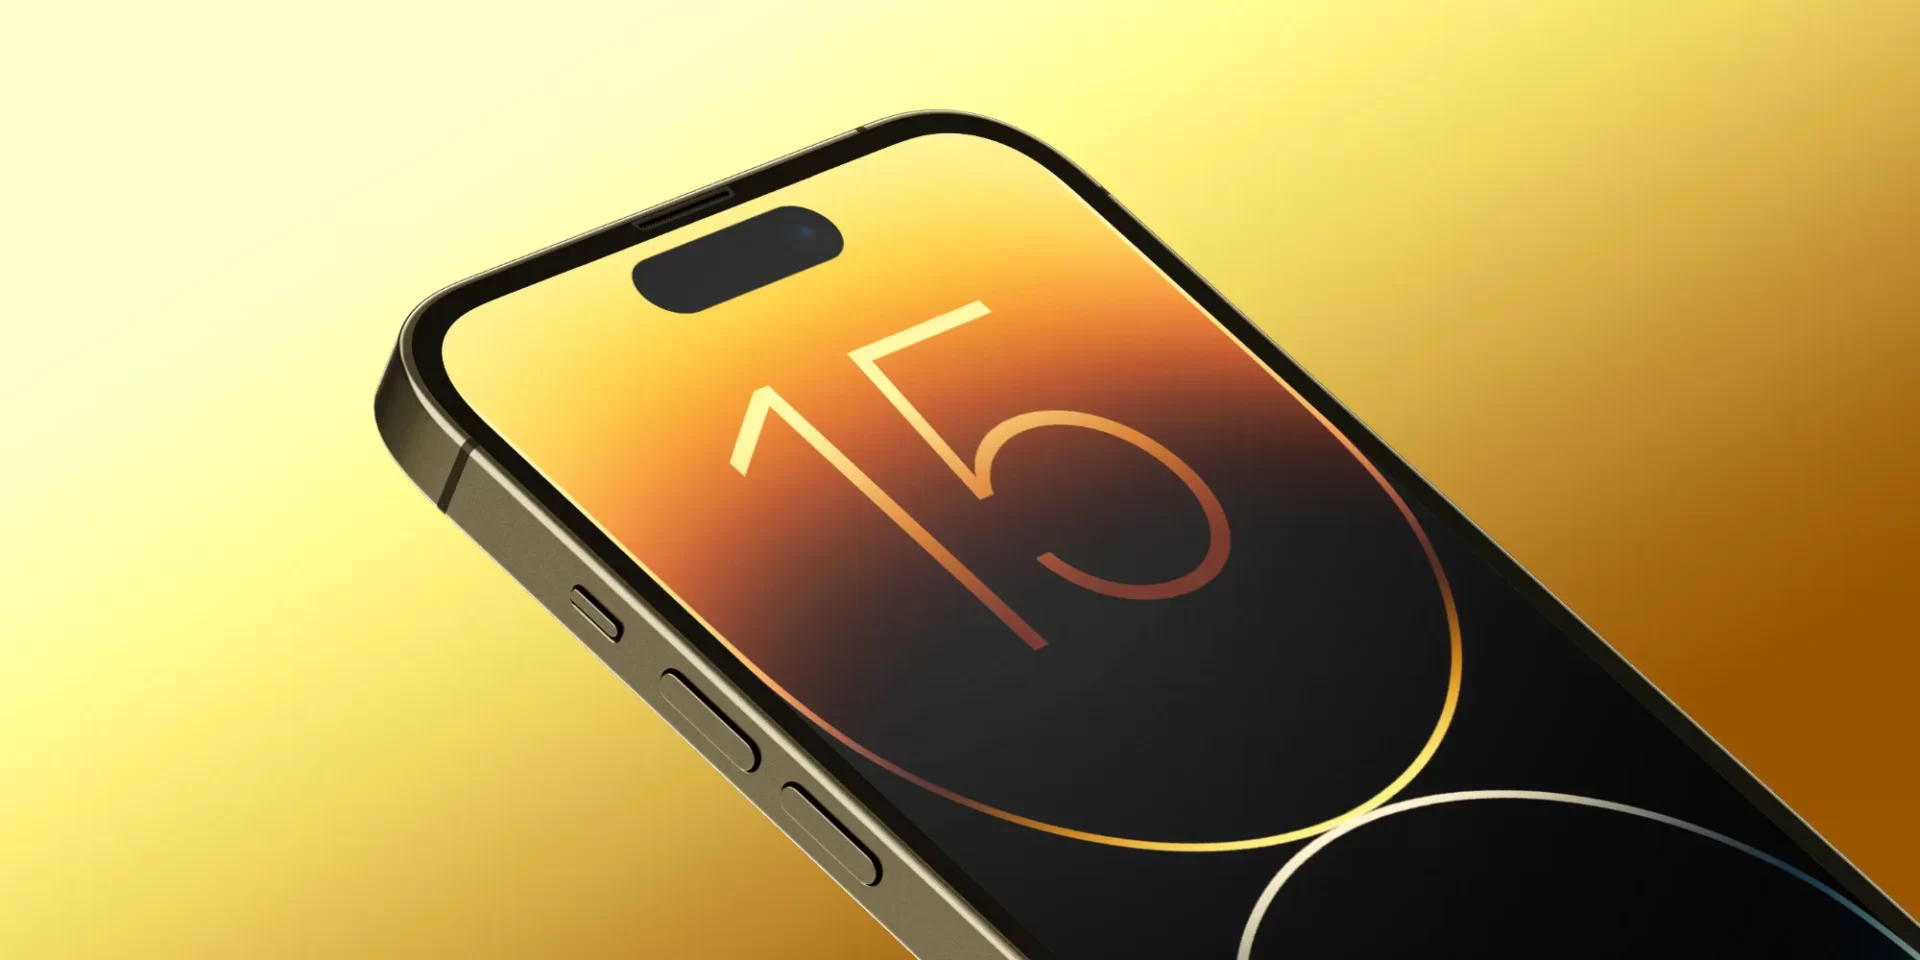 iPhone 15 đang bắt đầu giai đoạn thử nghiệm sản xuất và dự đoán có thể ra mắt khoảng cuối năm 2023.